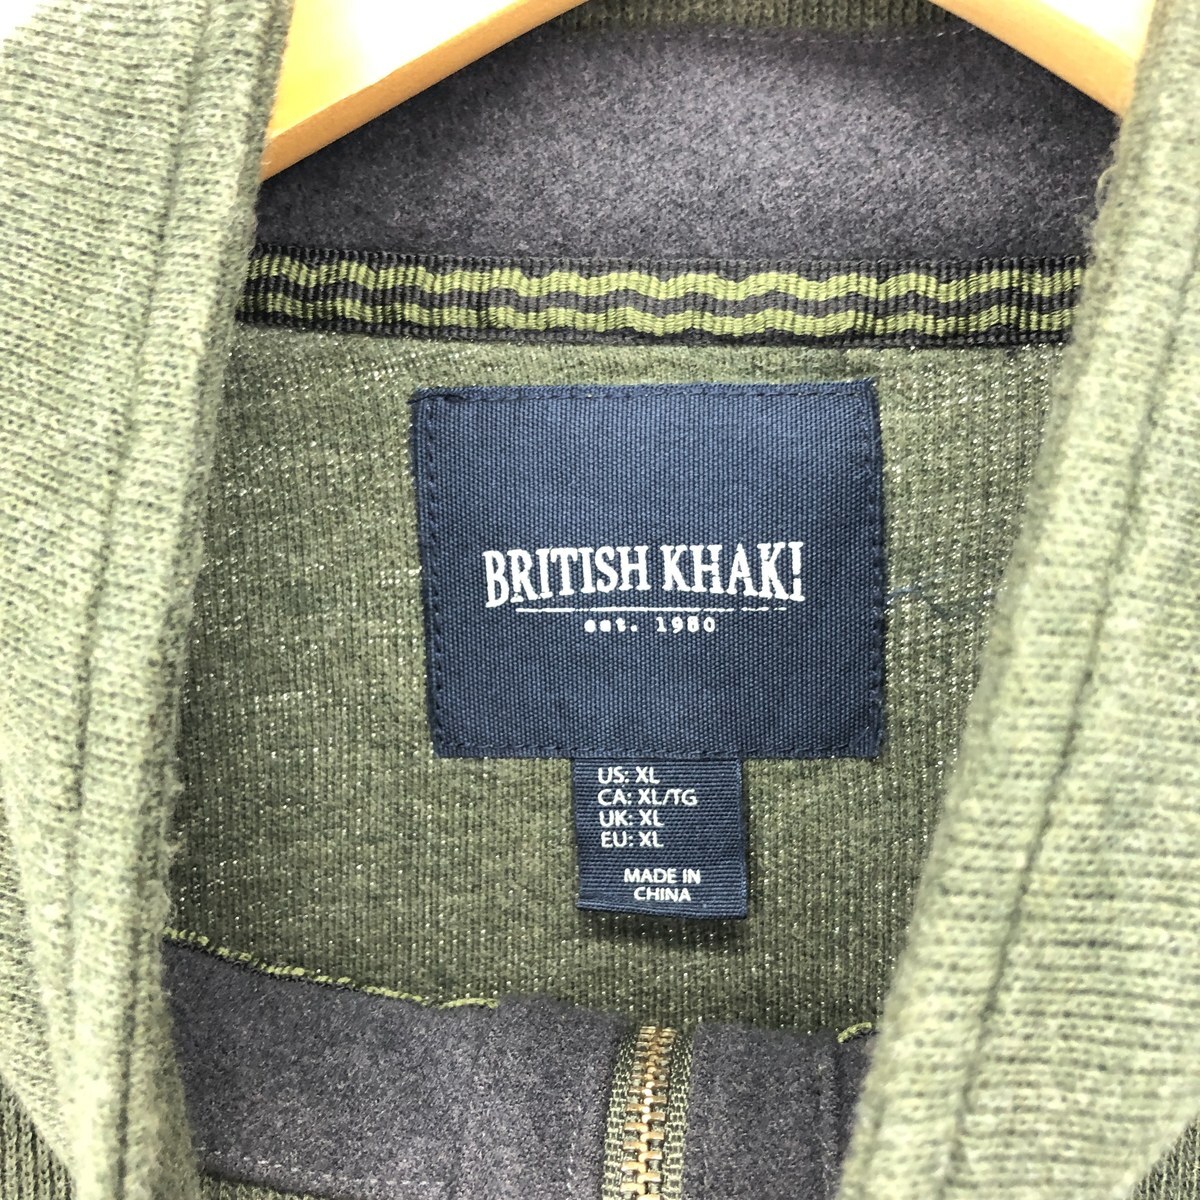  б/у одежда BRITISH KHAKI хлопок вязаный половина Zip свитер мужской XL /eaa421770